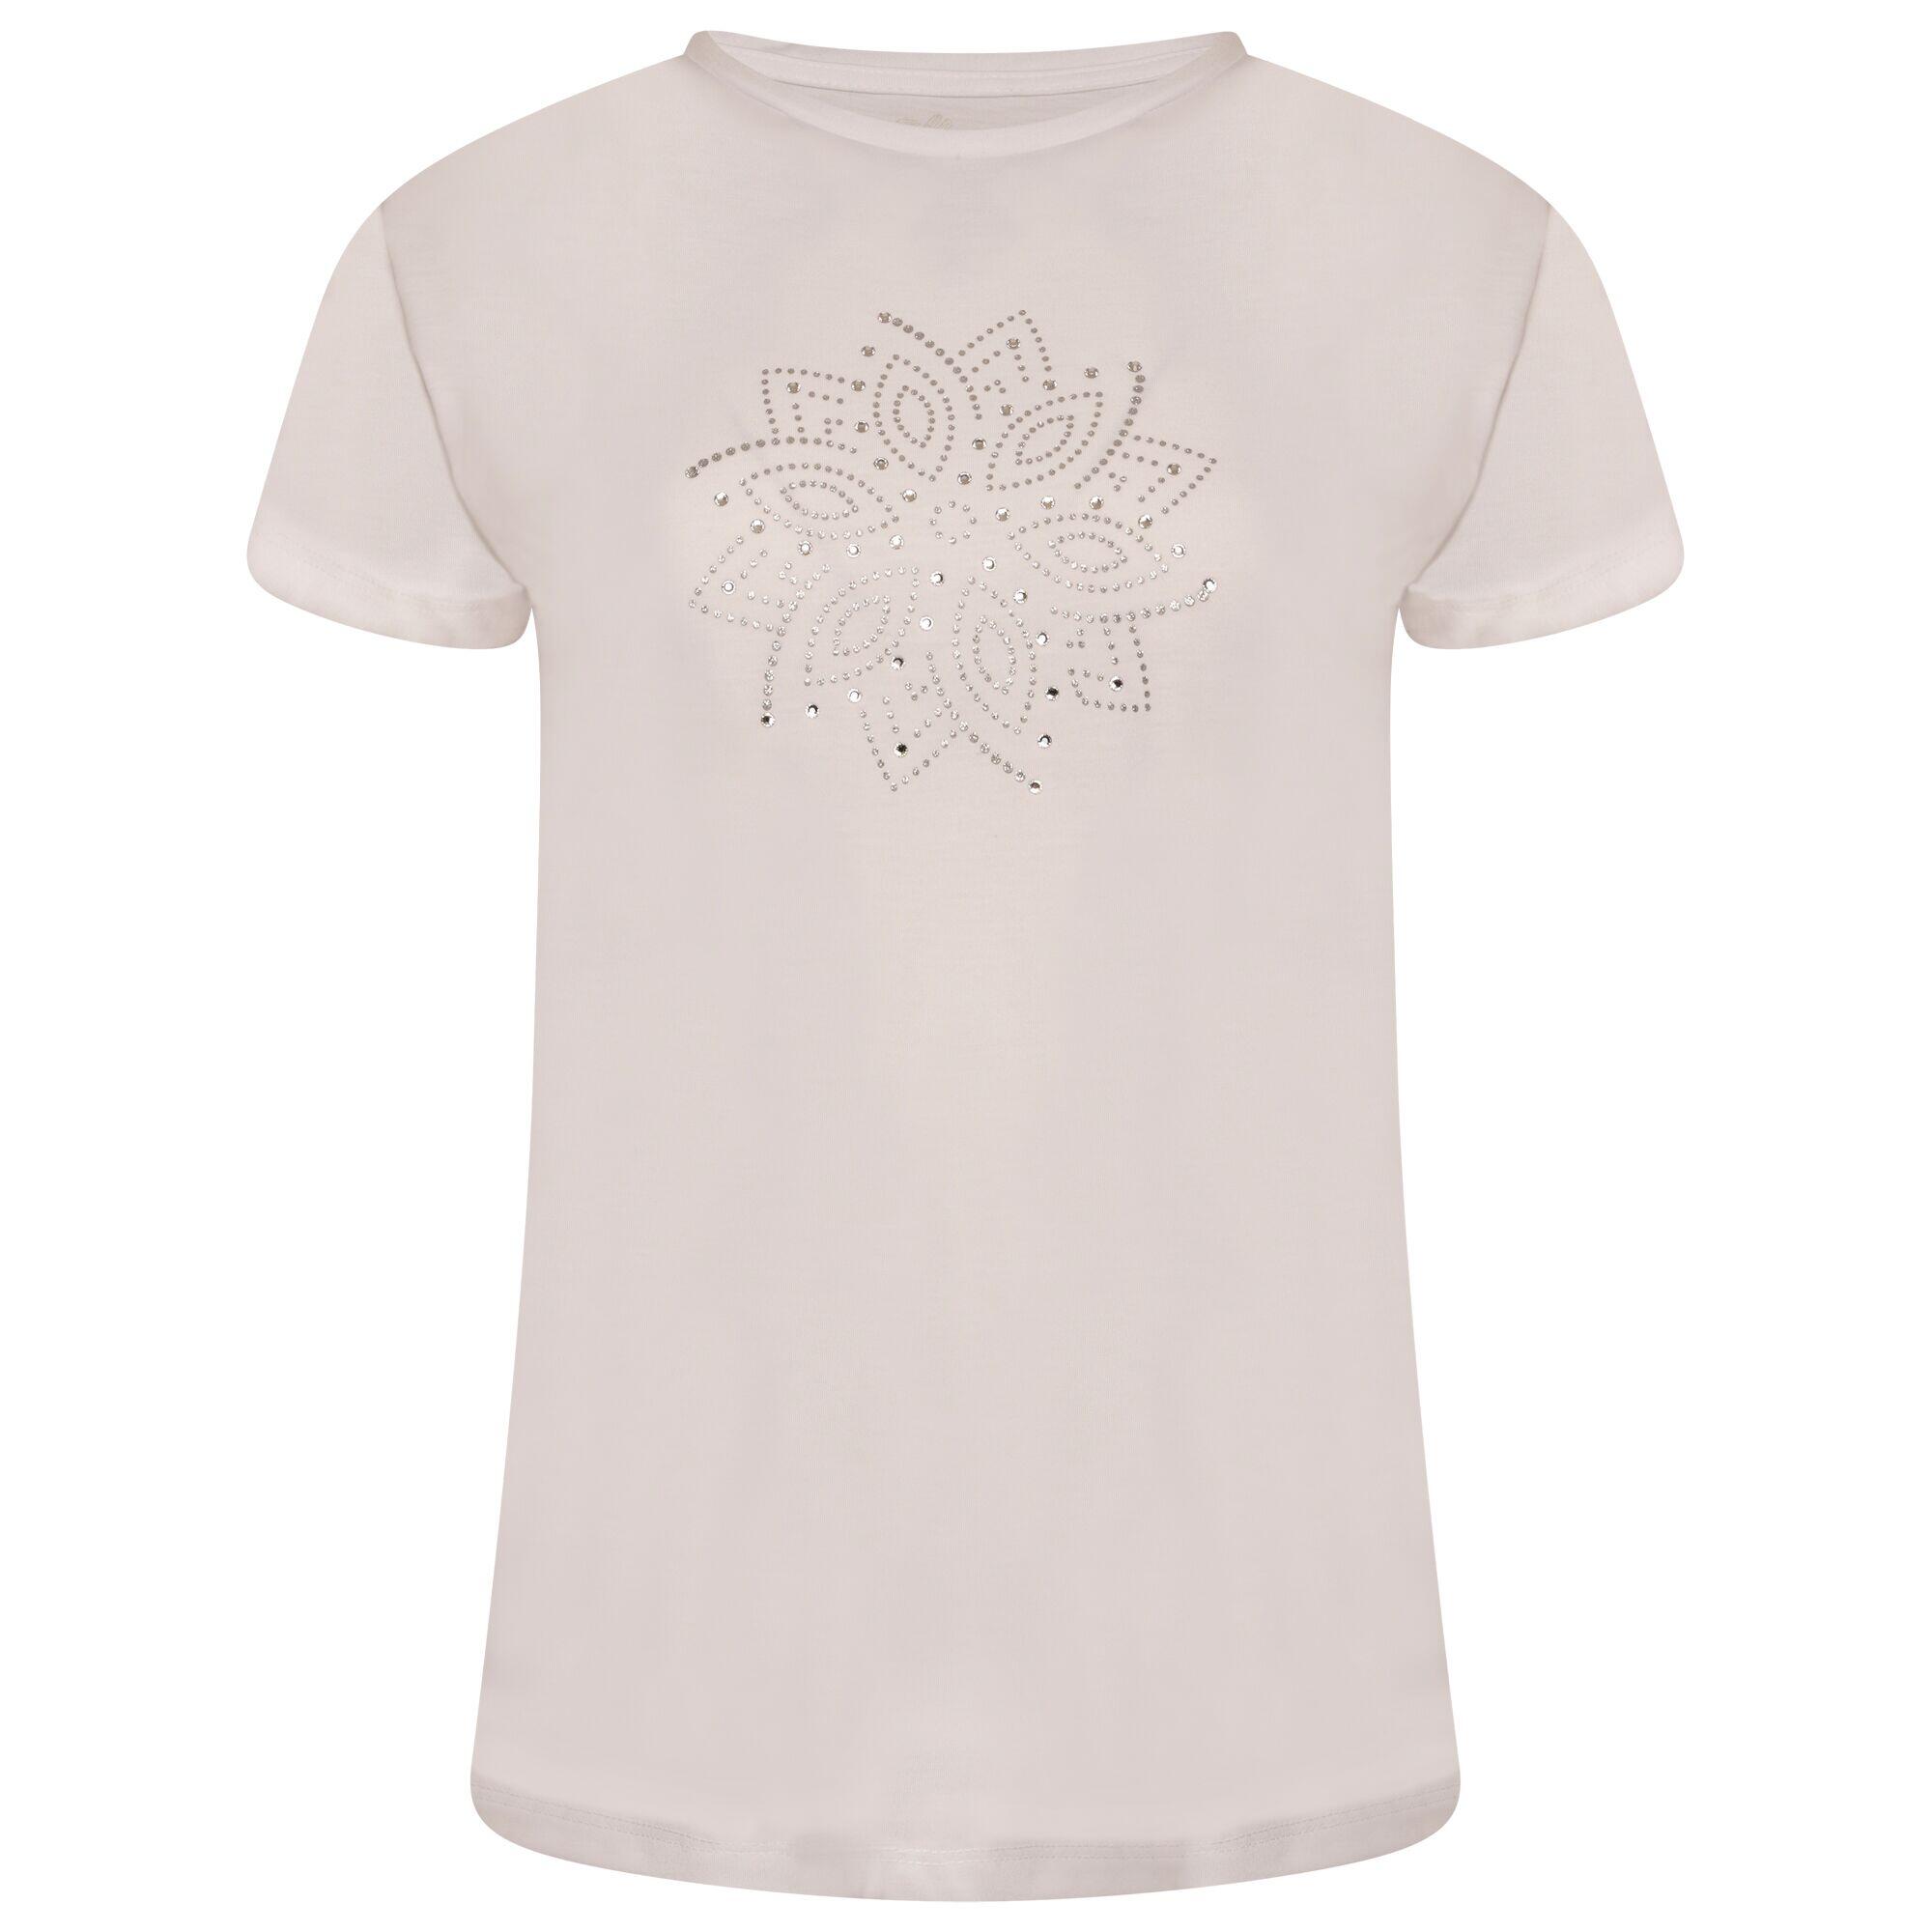 Crystallize Women's Fitness Short Sleeve  T-Shirt - White 5/5